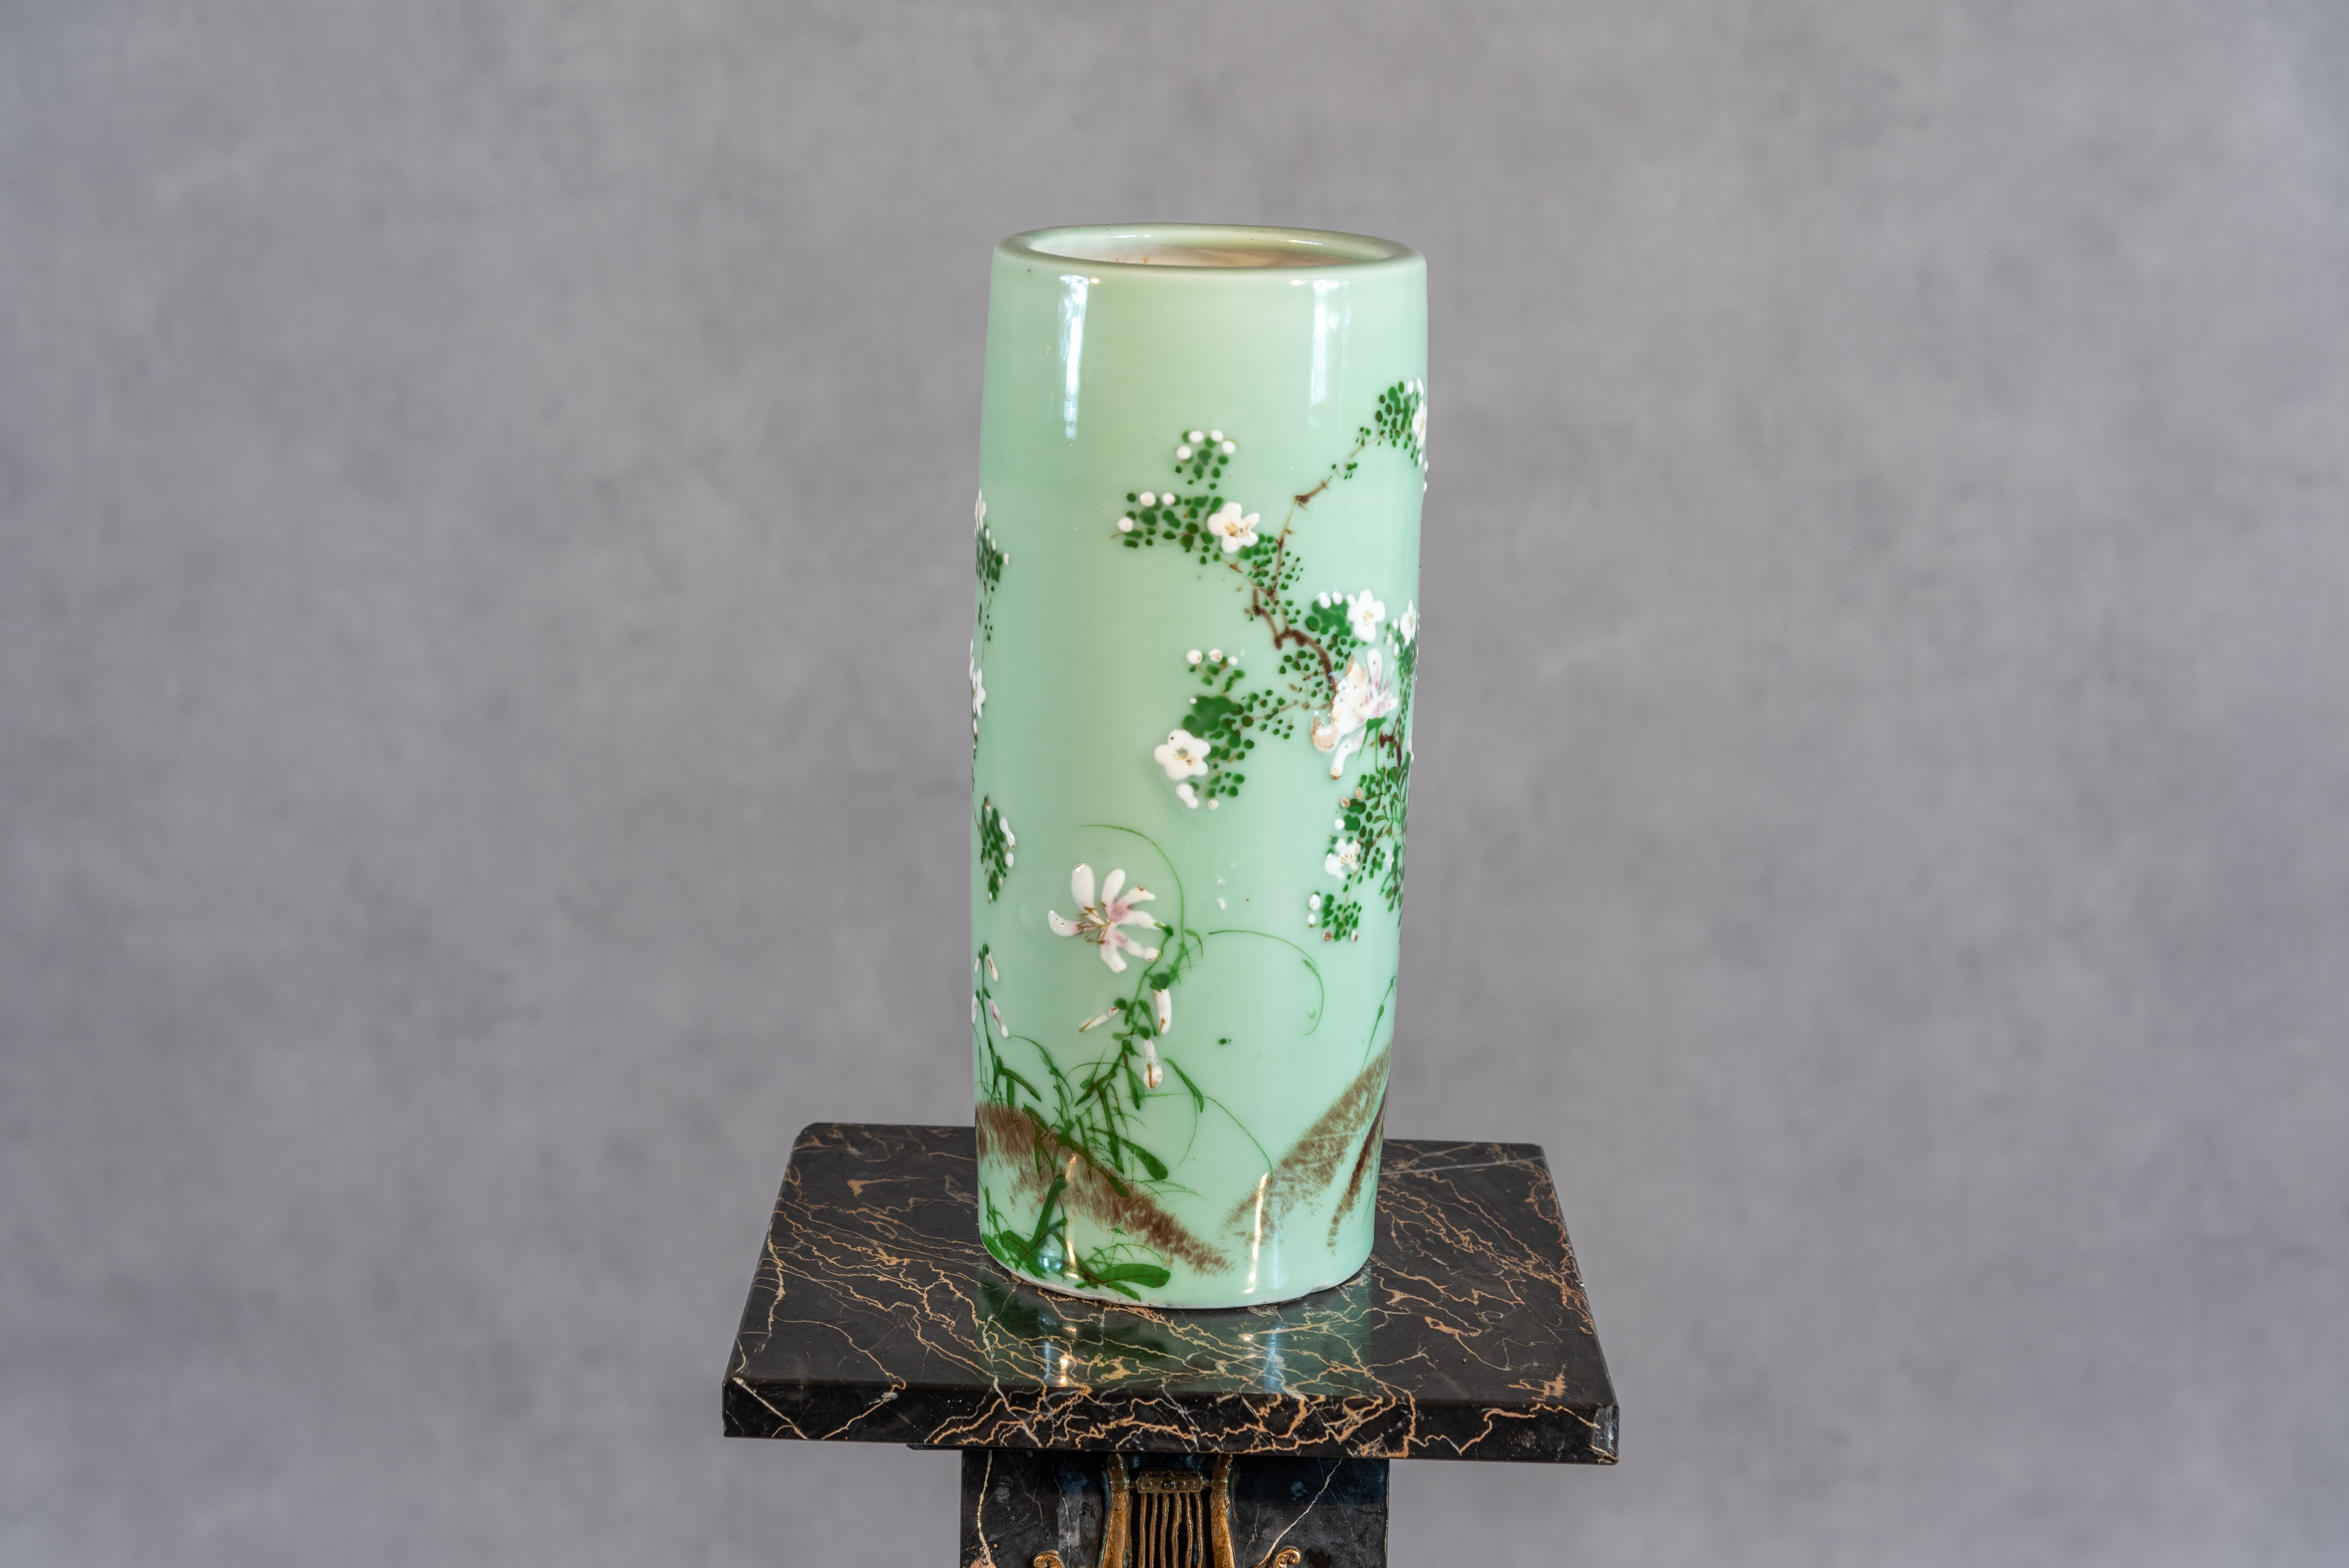 
Ce grand vase en céladon du XXe siècle est un témoignage gracieux de l'art du XXe siècle. Réalisée avec un soin méticuleux, la glaçure céladon donne une teinte verte douce et apaisante, servant de toile de fond à de délicates décorations florales.